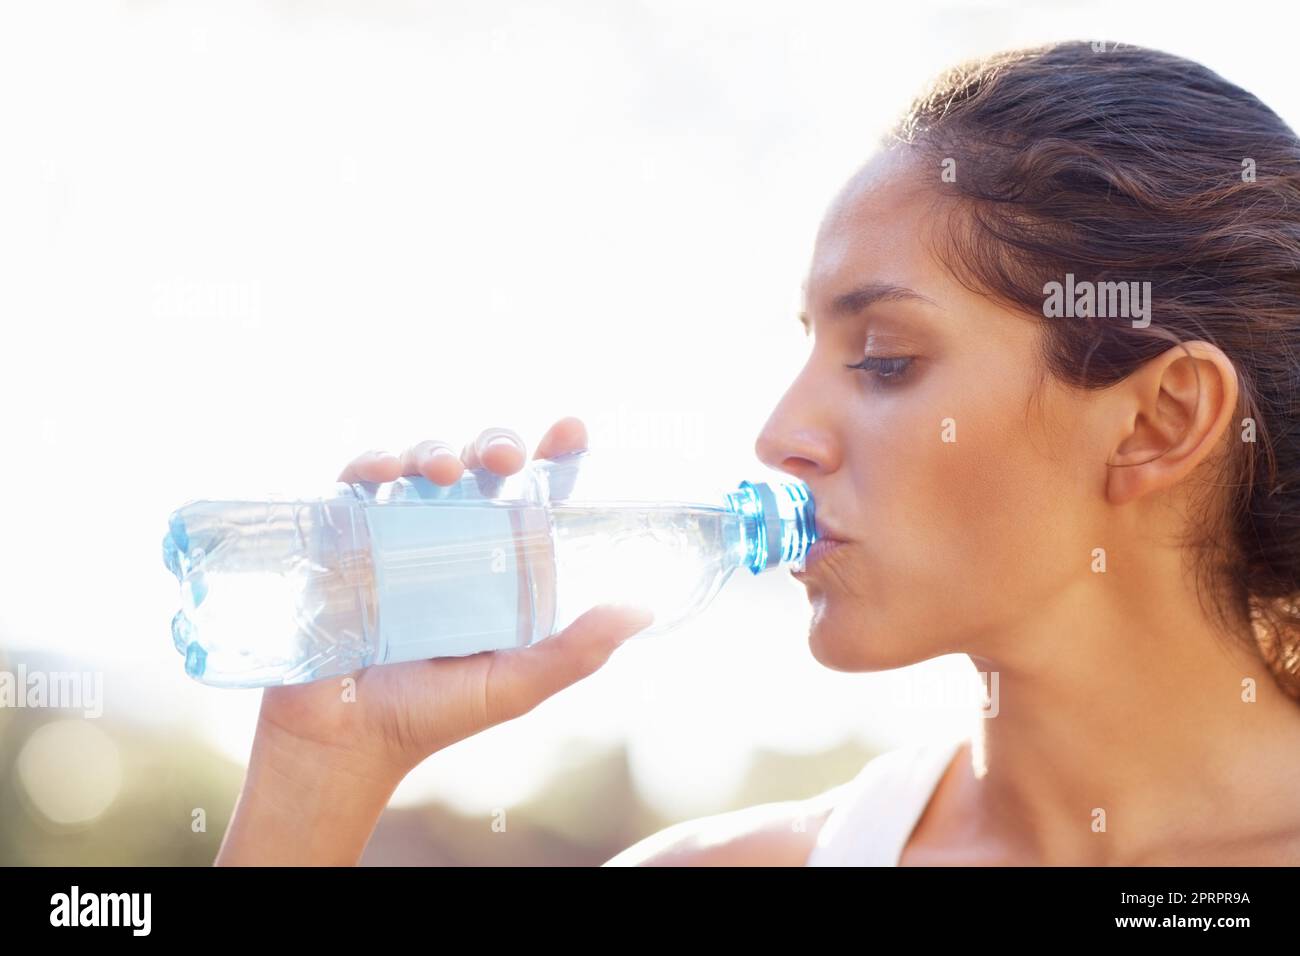 Une jeune femme boit de l'eau en bouteille. Gros plan de la jeune femme qui boit de l'eau en bouteille. Banque D'Images